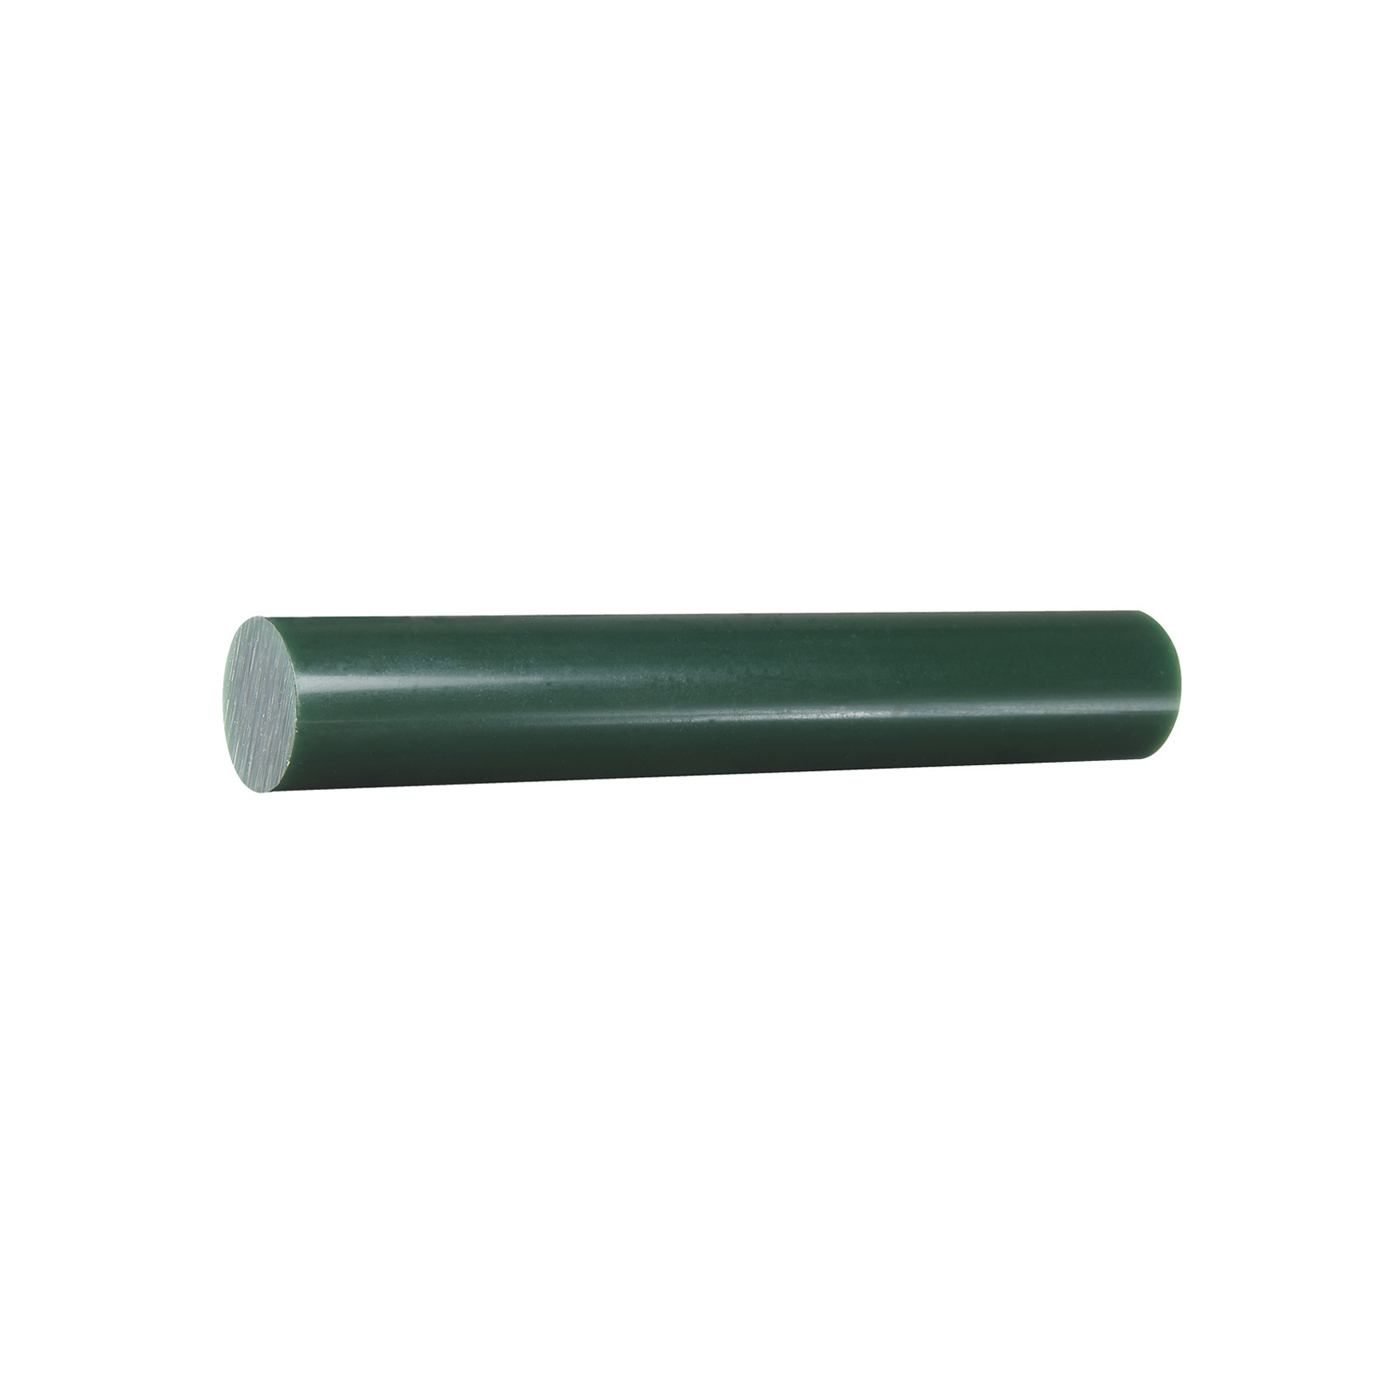 Gemvision Feil-/Fräswachs, rund, grün, massiv, 152,4 x 22,2 mm - 1 Stück